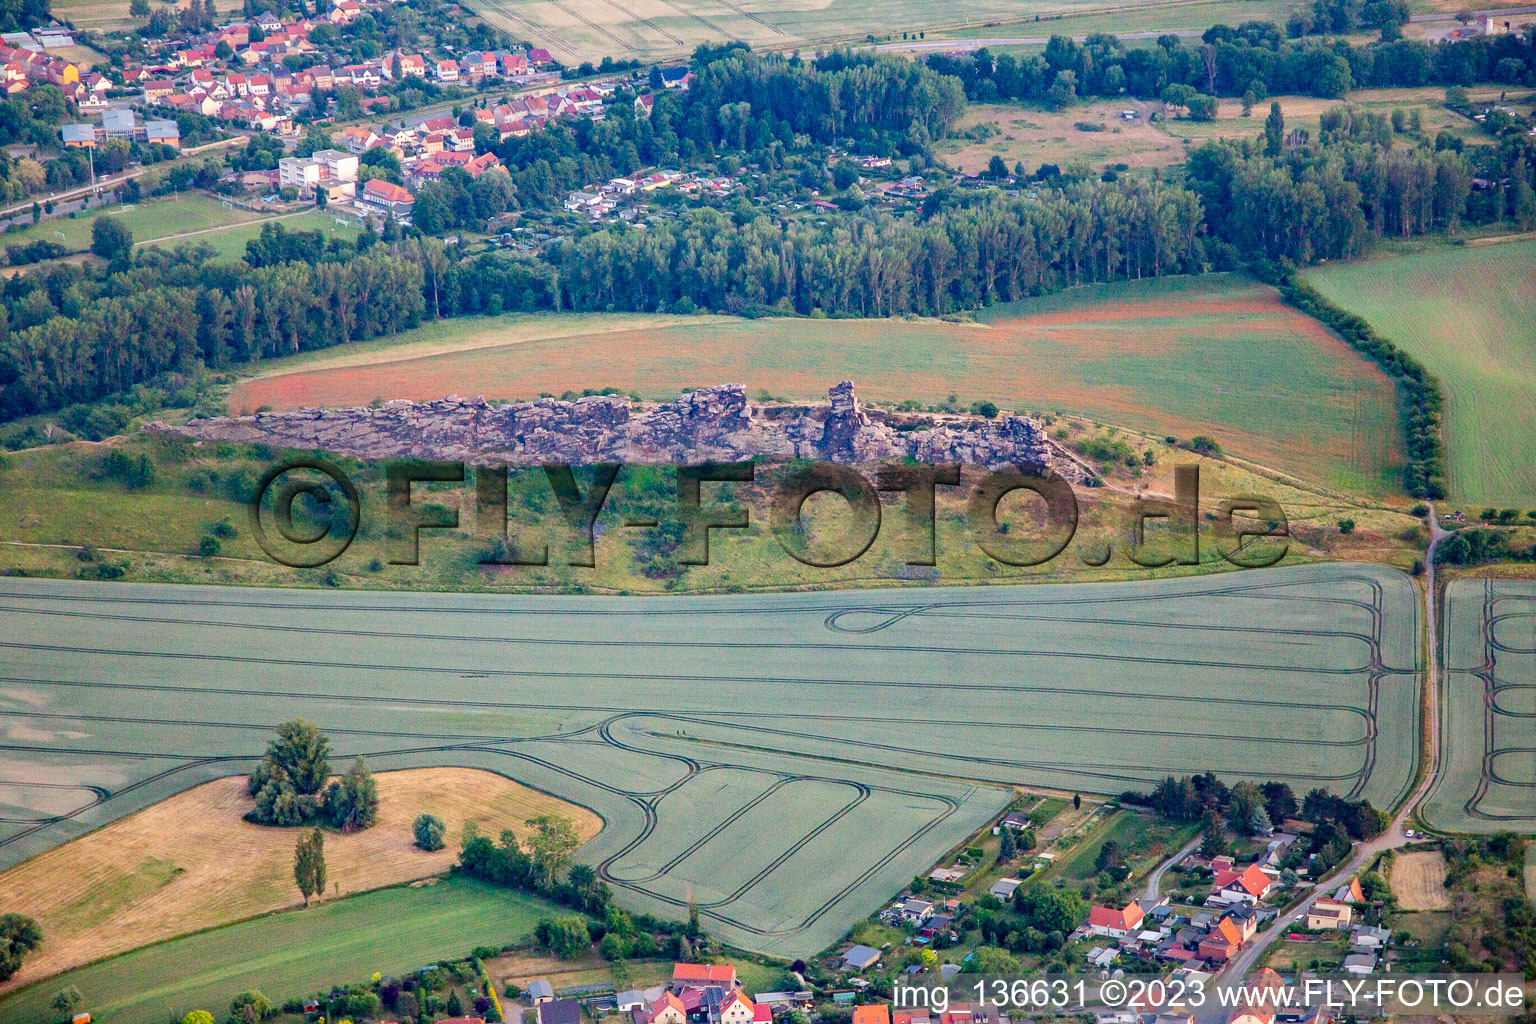 Luftbild von Teufelsmauer (Königsstein) von Norden im Ortsteil Weddersleben in Thale im Bundesland Sachsen-Anhalt, Deutschland